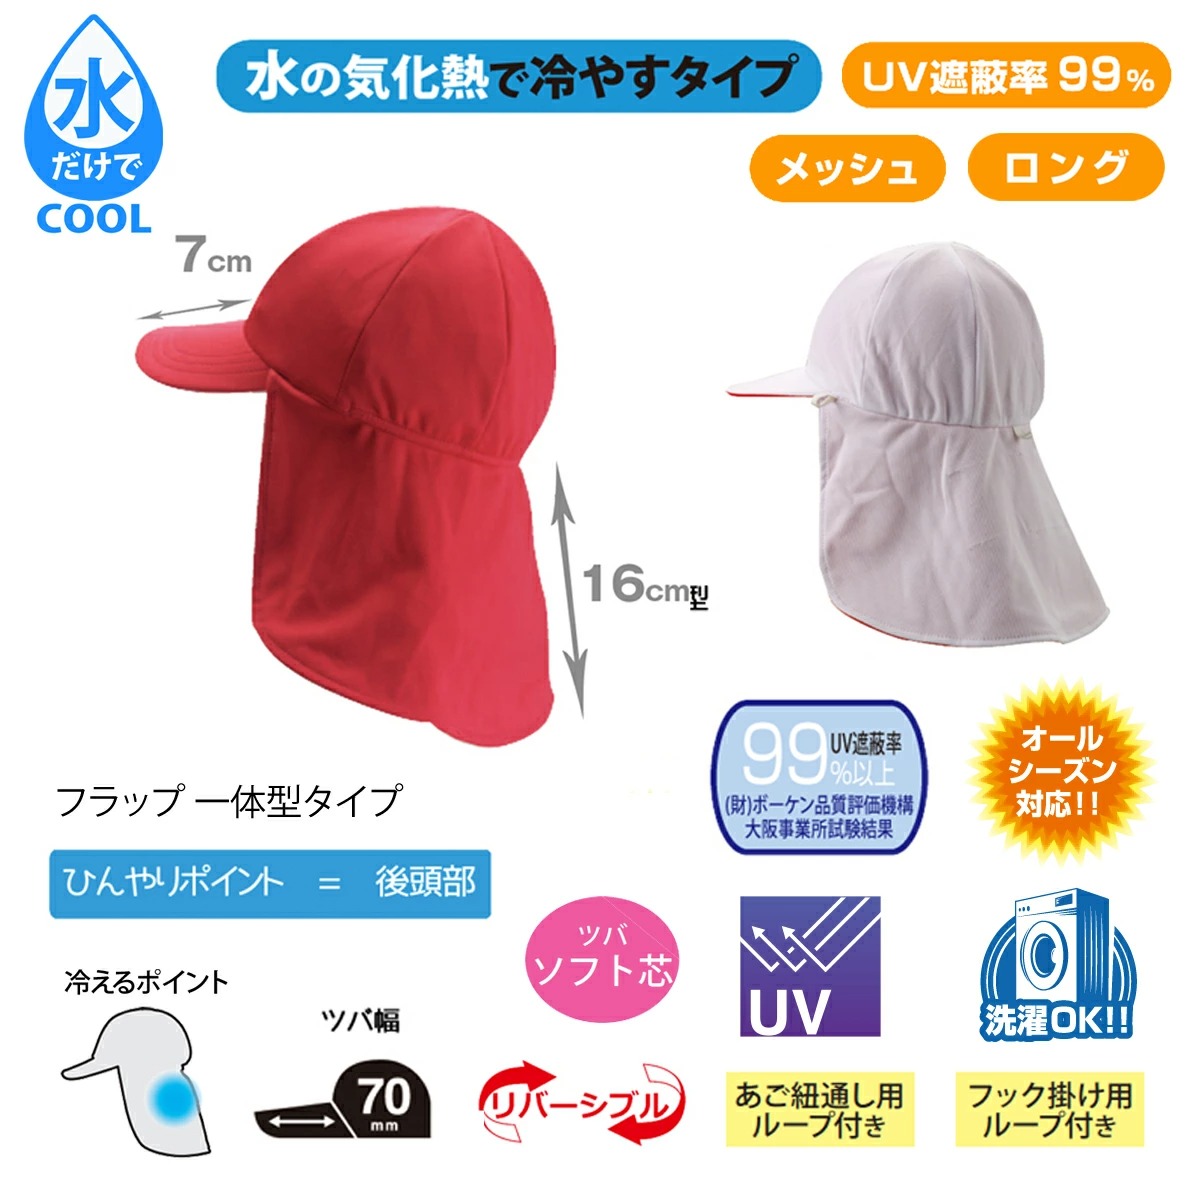 クールビットUVフラップ赤白帽子ロングタイプの仕様水の気化熱で冷やすタイプ,ひんやりポイント＝後頭部,フラップと一体型